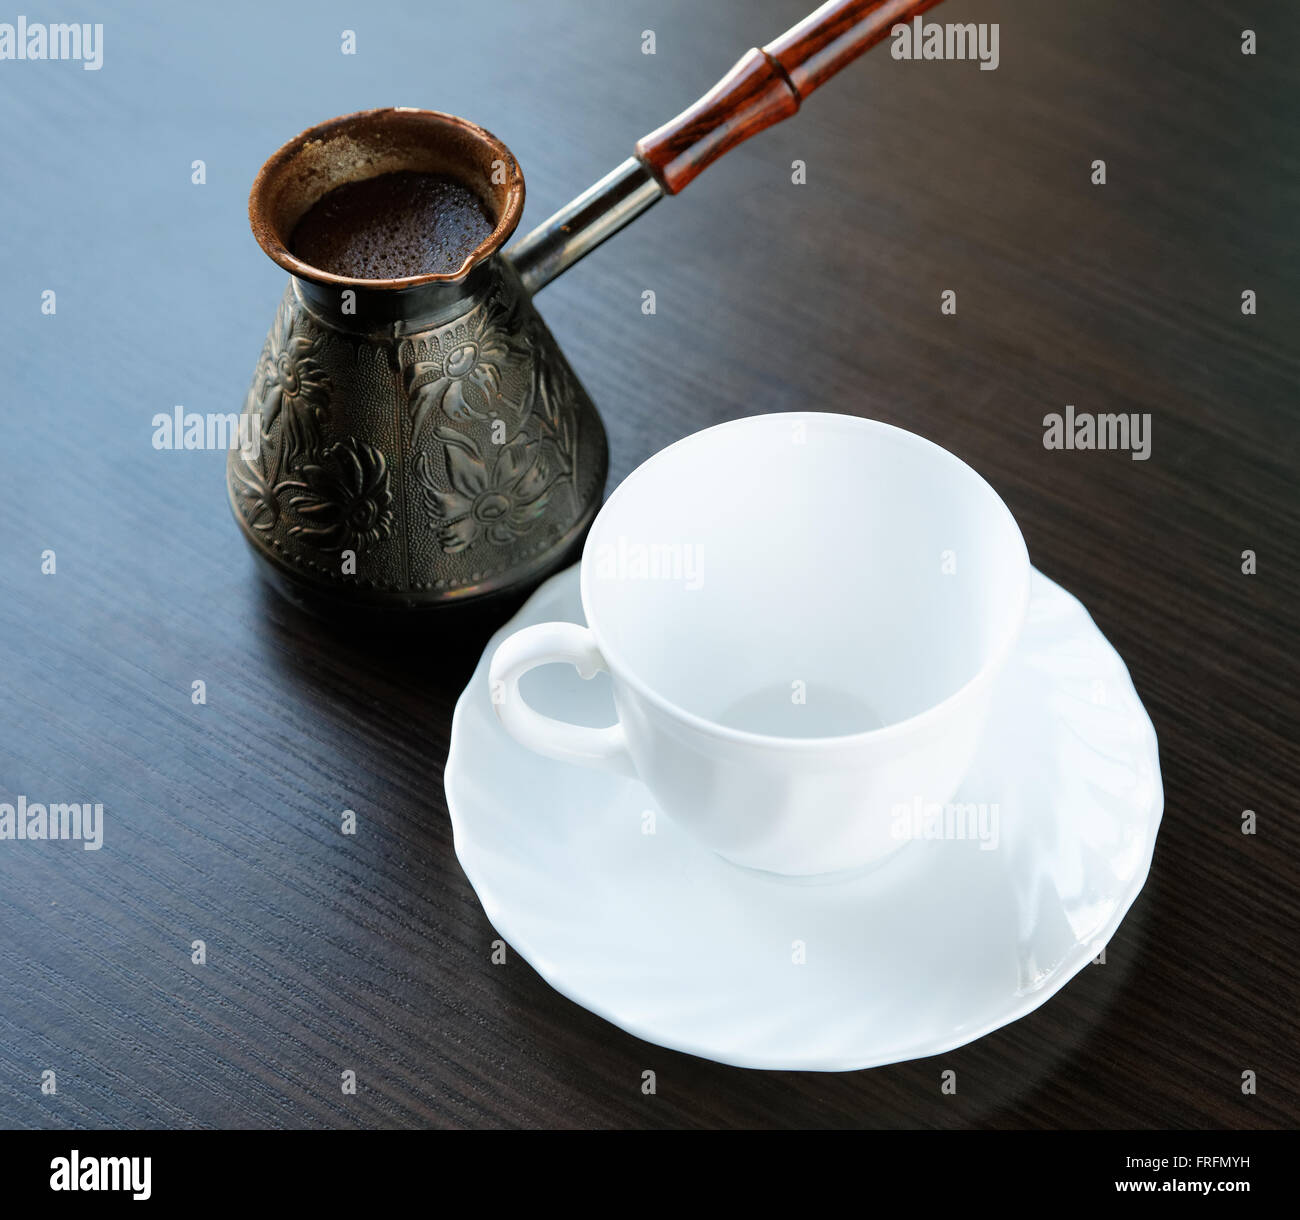 Macchina per il caffè con caffè e la tazza bianca sul tavolo Foto Stock